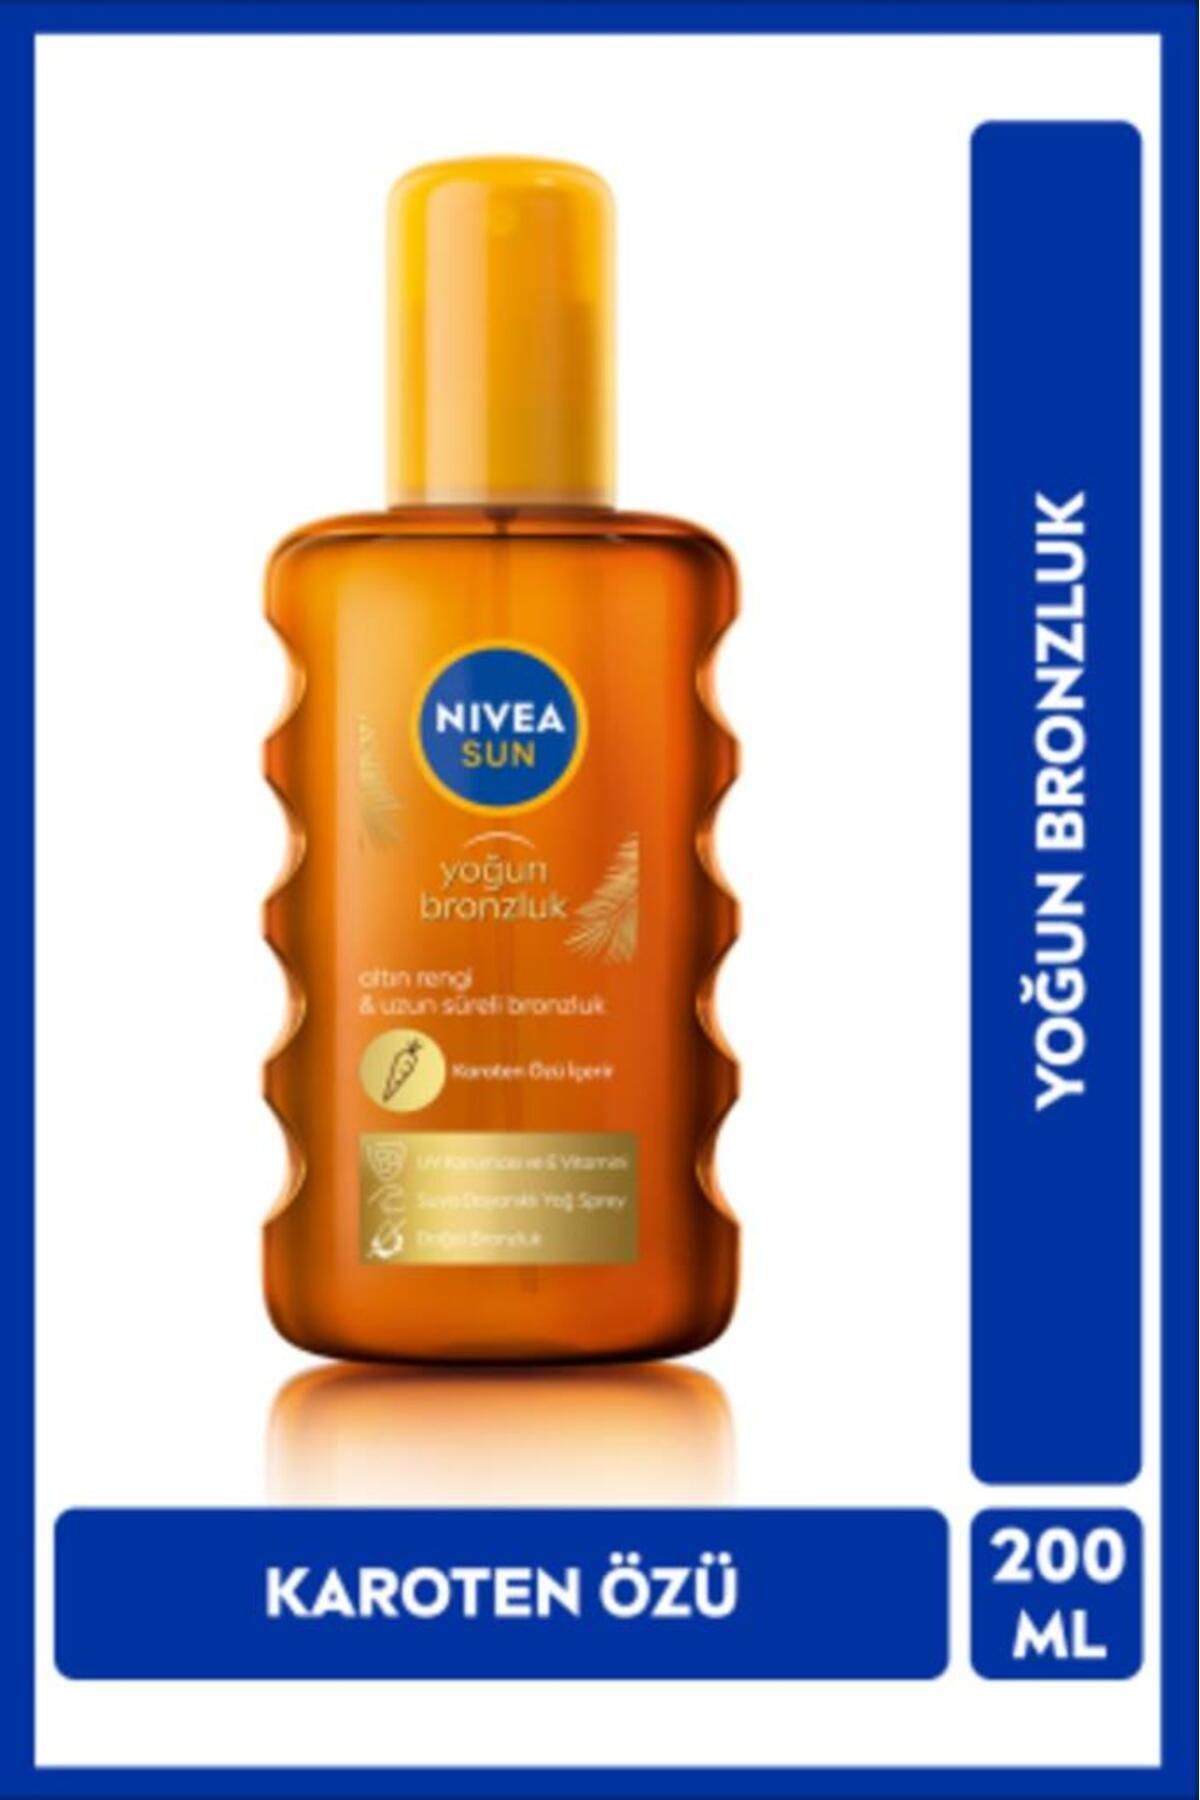 NIVEA Karoten Özlü Yoğun Bronzlaştırıcı Güneş Yağ Sprey 200ml, E Vitamini, UVA Koruması, Doğal Bronzluk